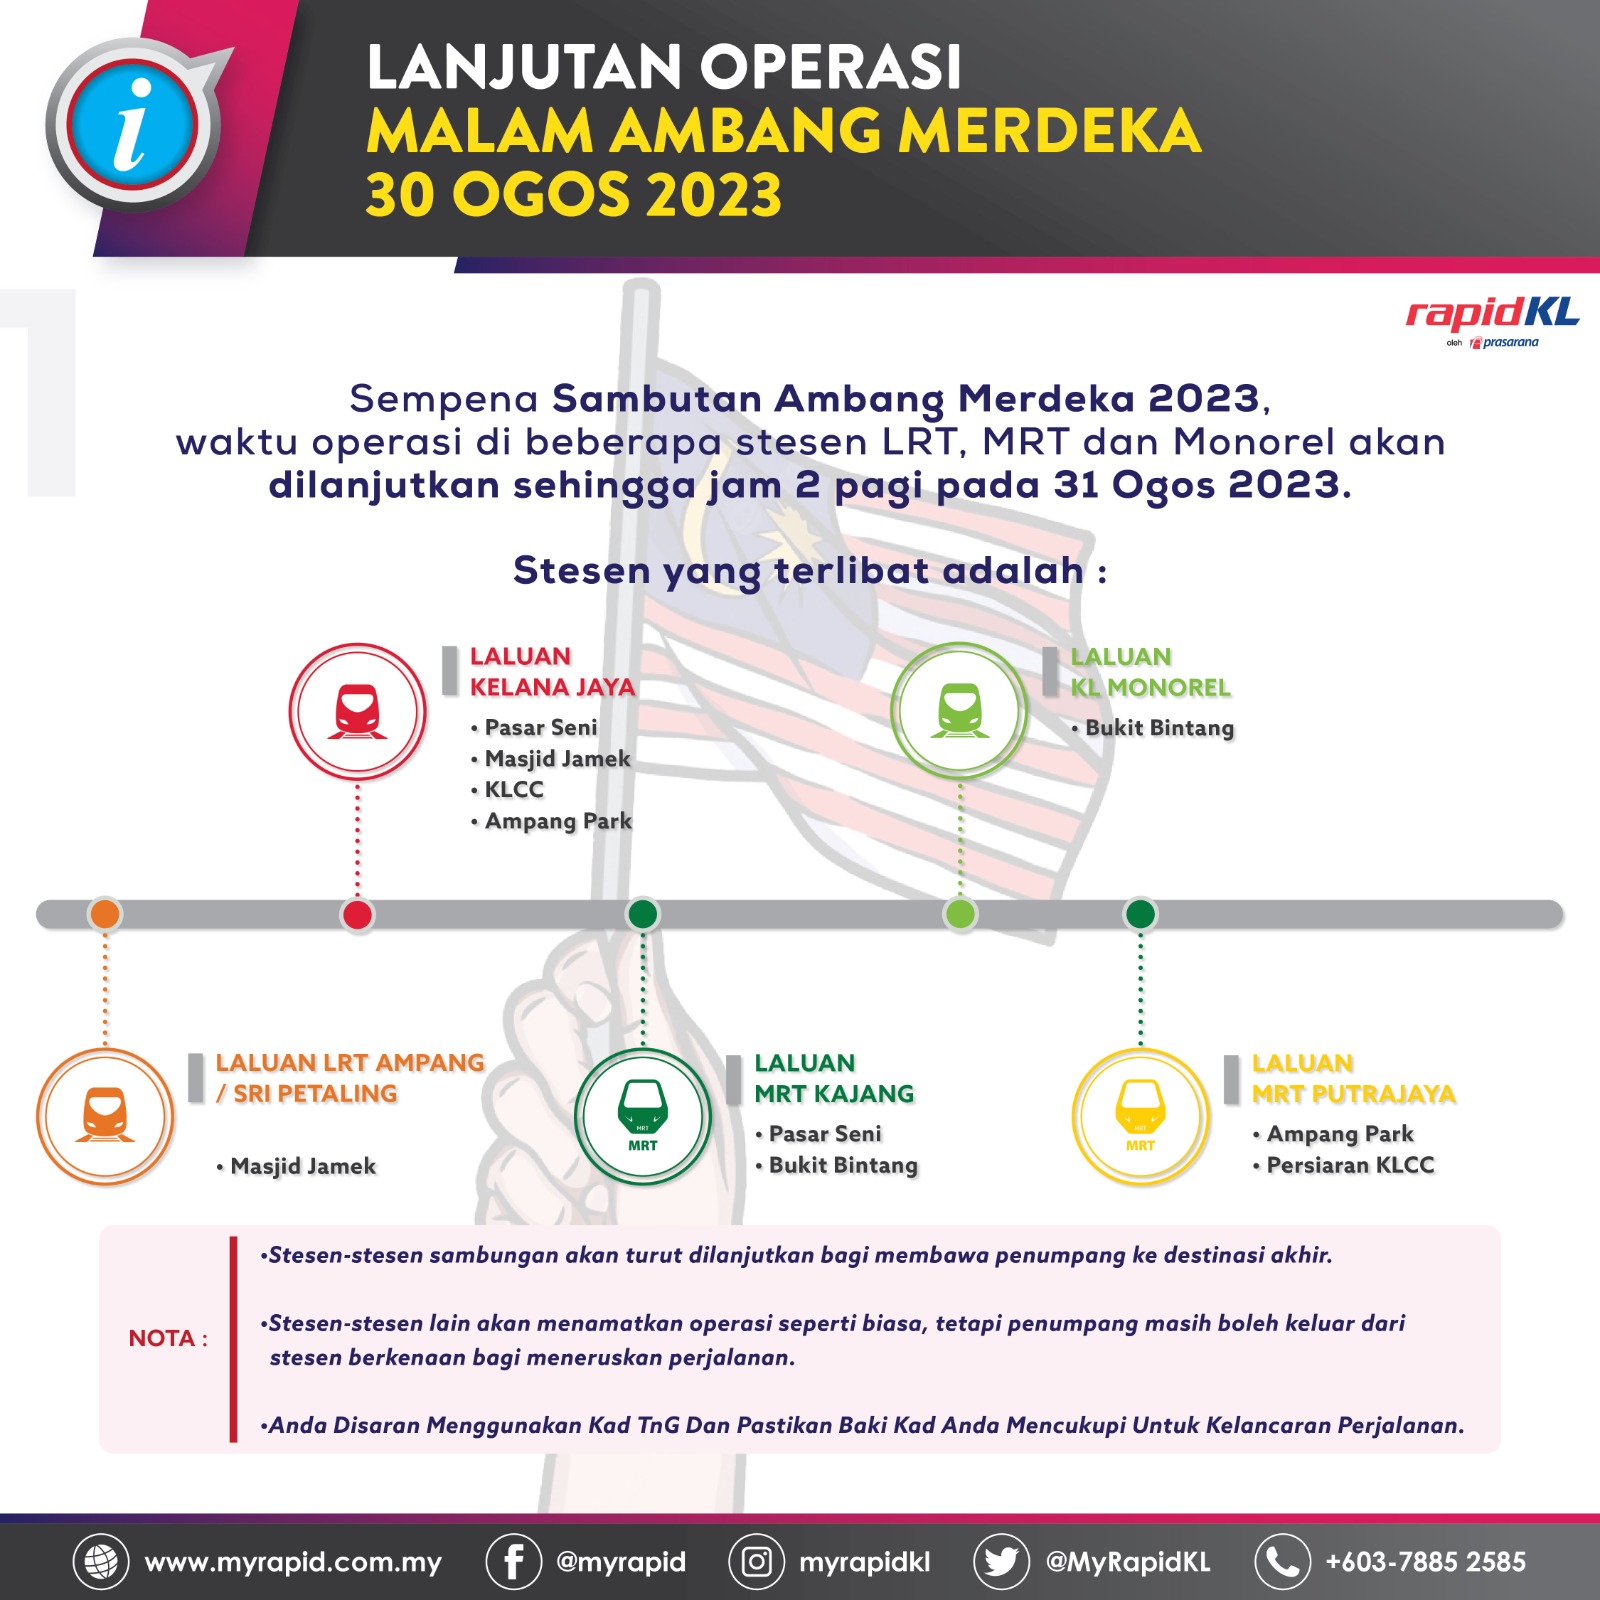 merdeka 2023 rapid kl extended lrt mrt monorail routes